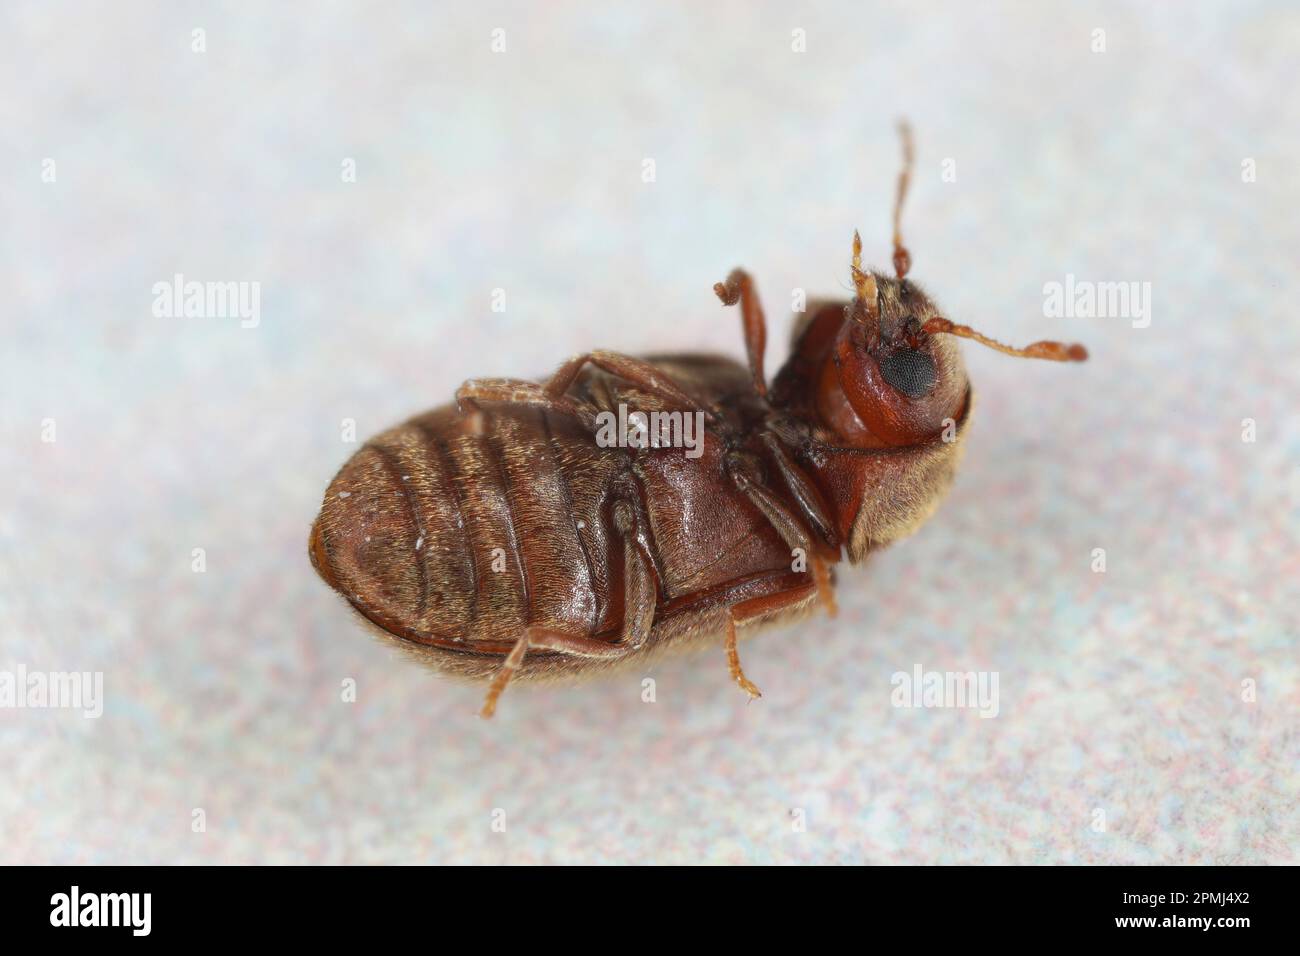 Drugstore beetle, drug store weevil, biscuit beetle also called bread beetle (Stegobium paniceum). Stock Photo